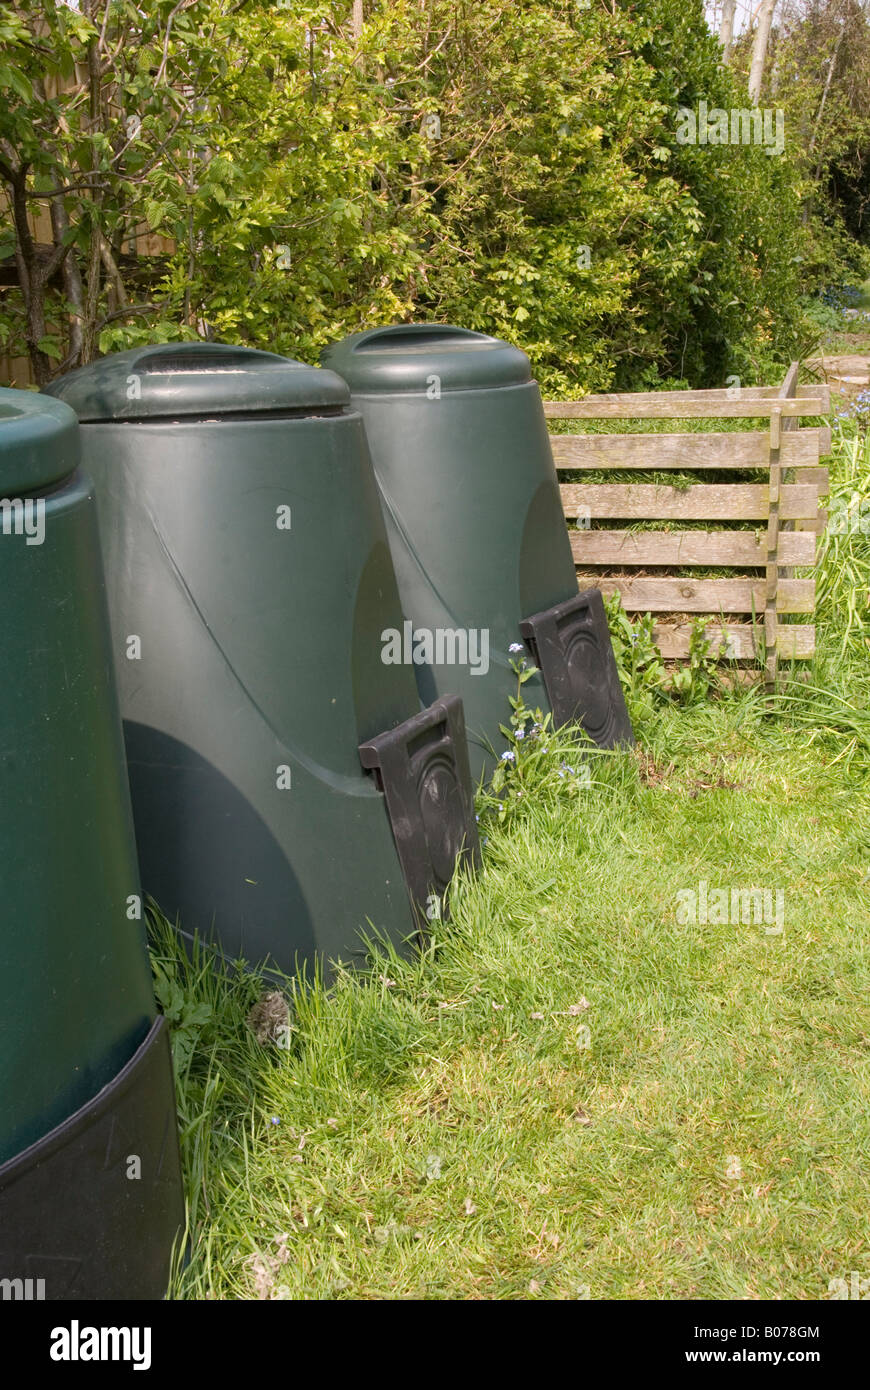 Kompost-Behälter in einem Garten Stockfoto